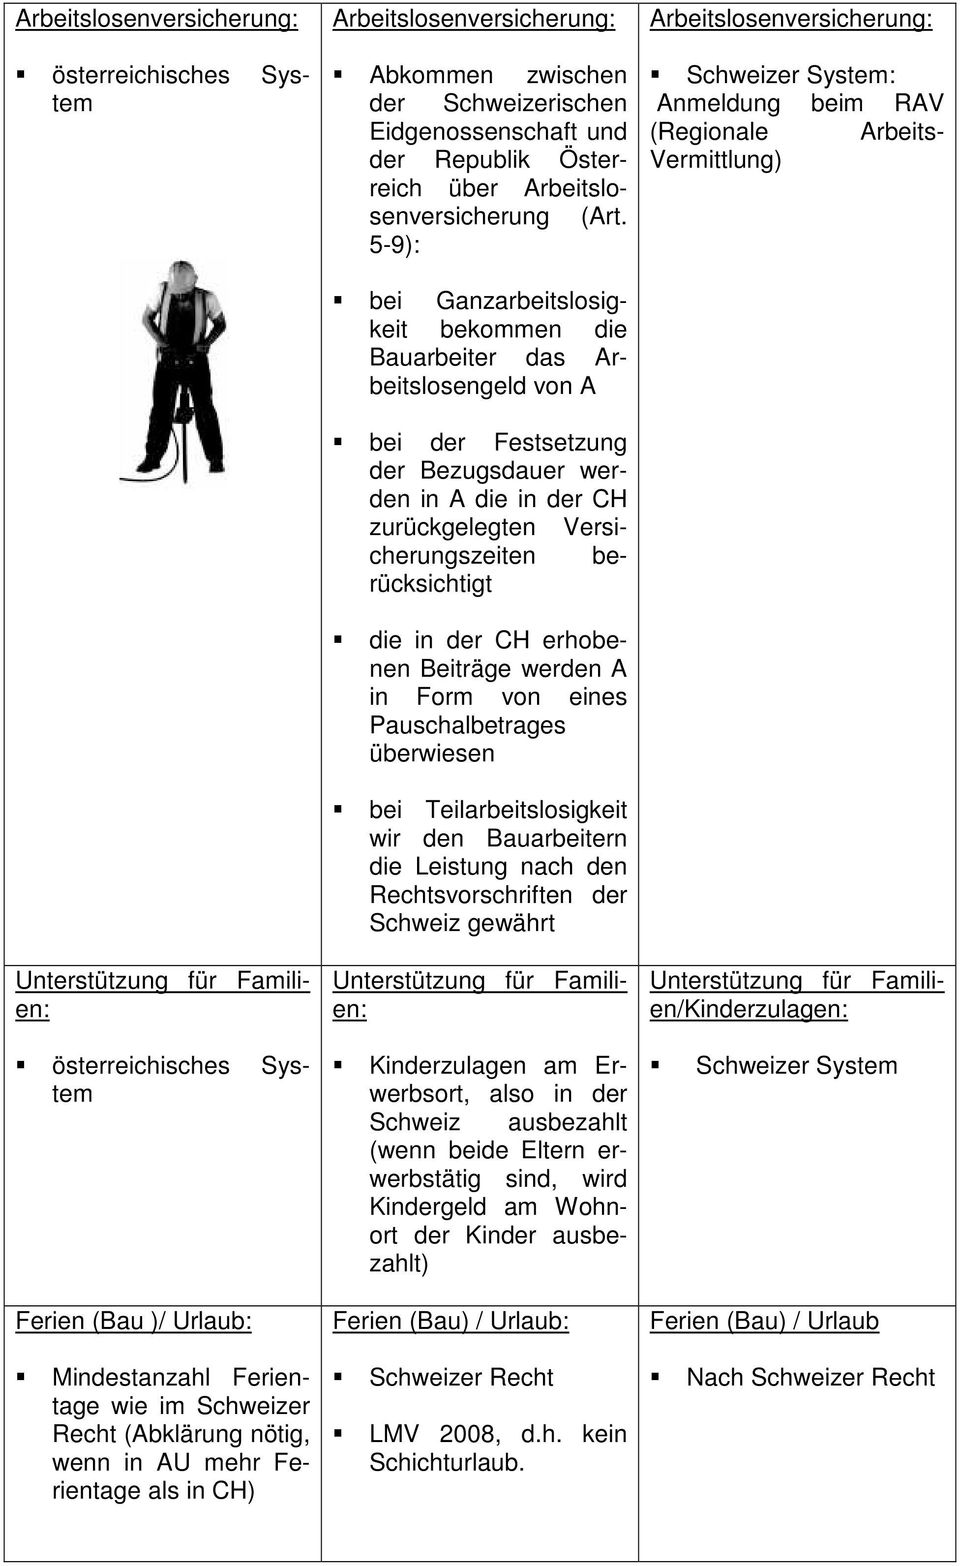 Arbeitslosenversicherung: Schweizer System: Anmeldung beim RAV (Regionale Arbeits- Vermittlung) die in der CH erhobenen Beiträge werden A in Form von eines Pauschalbetrages überwiesen bei